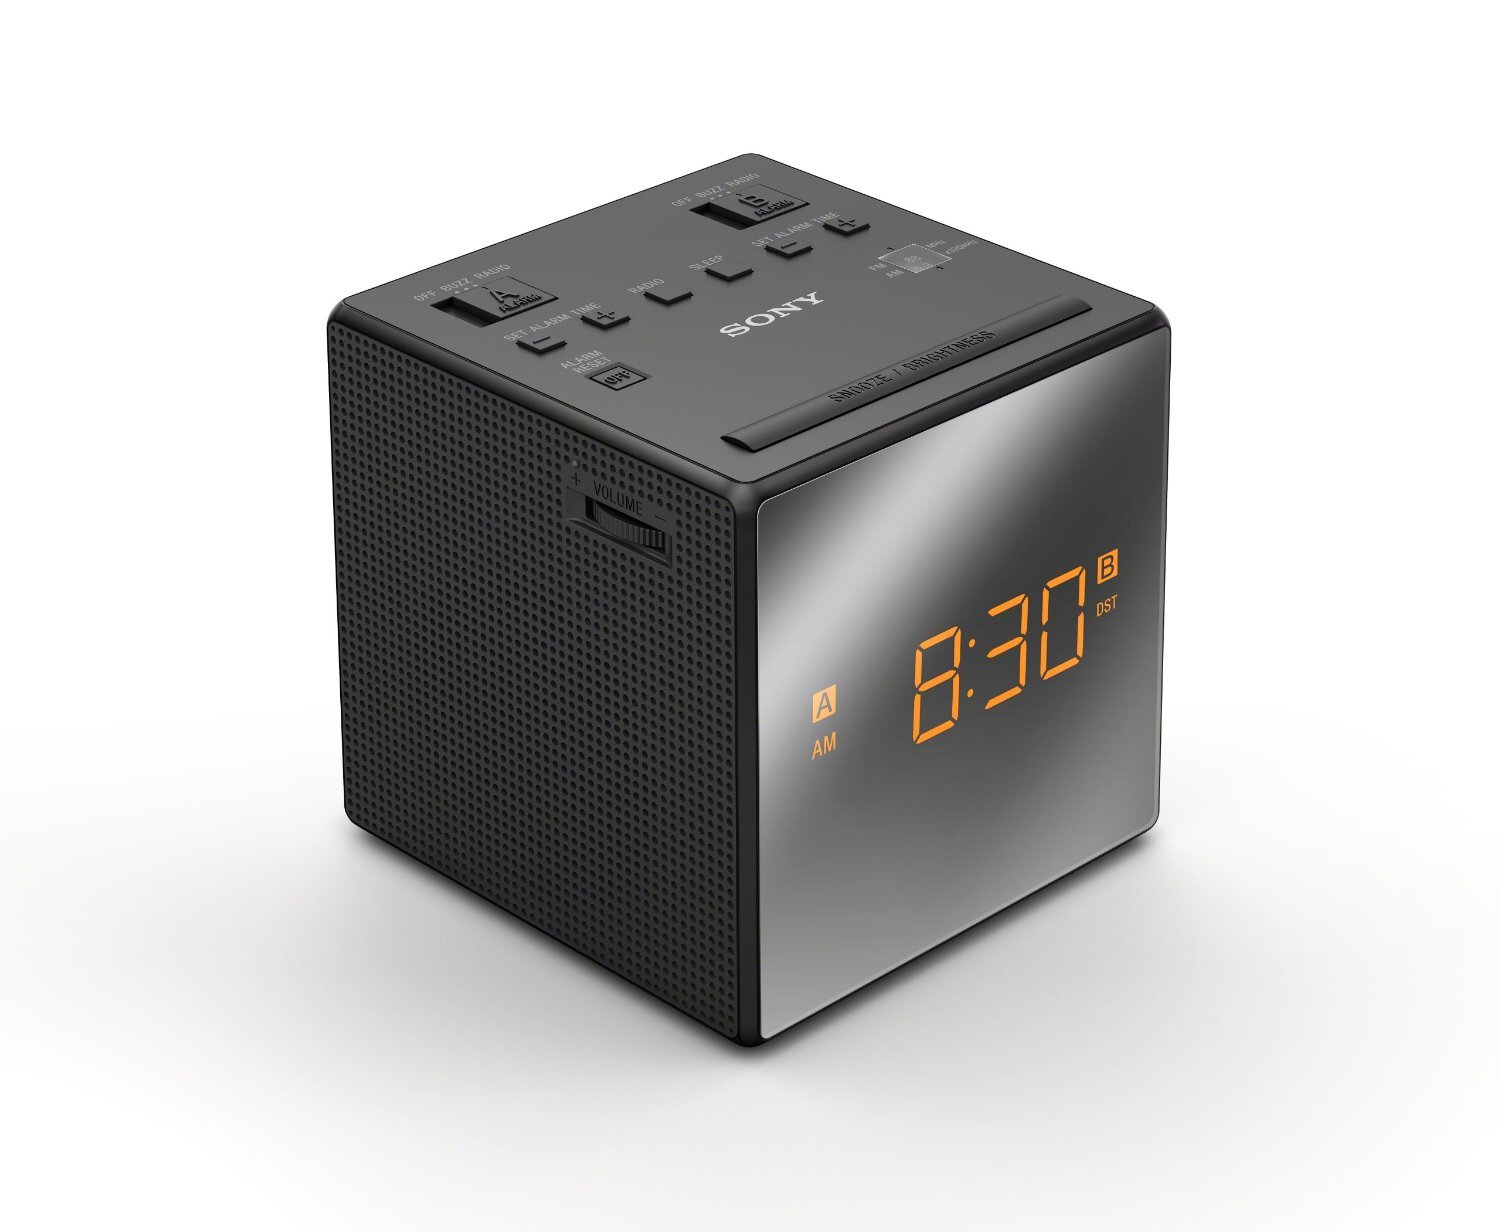 Đài radio Sony ICF-C1T Dual Alarm Clock